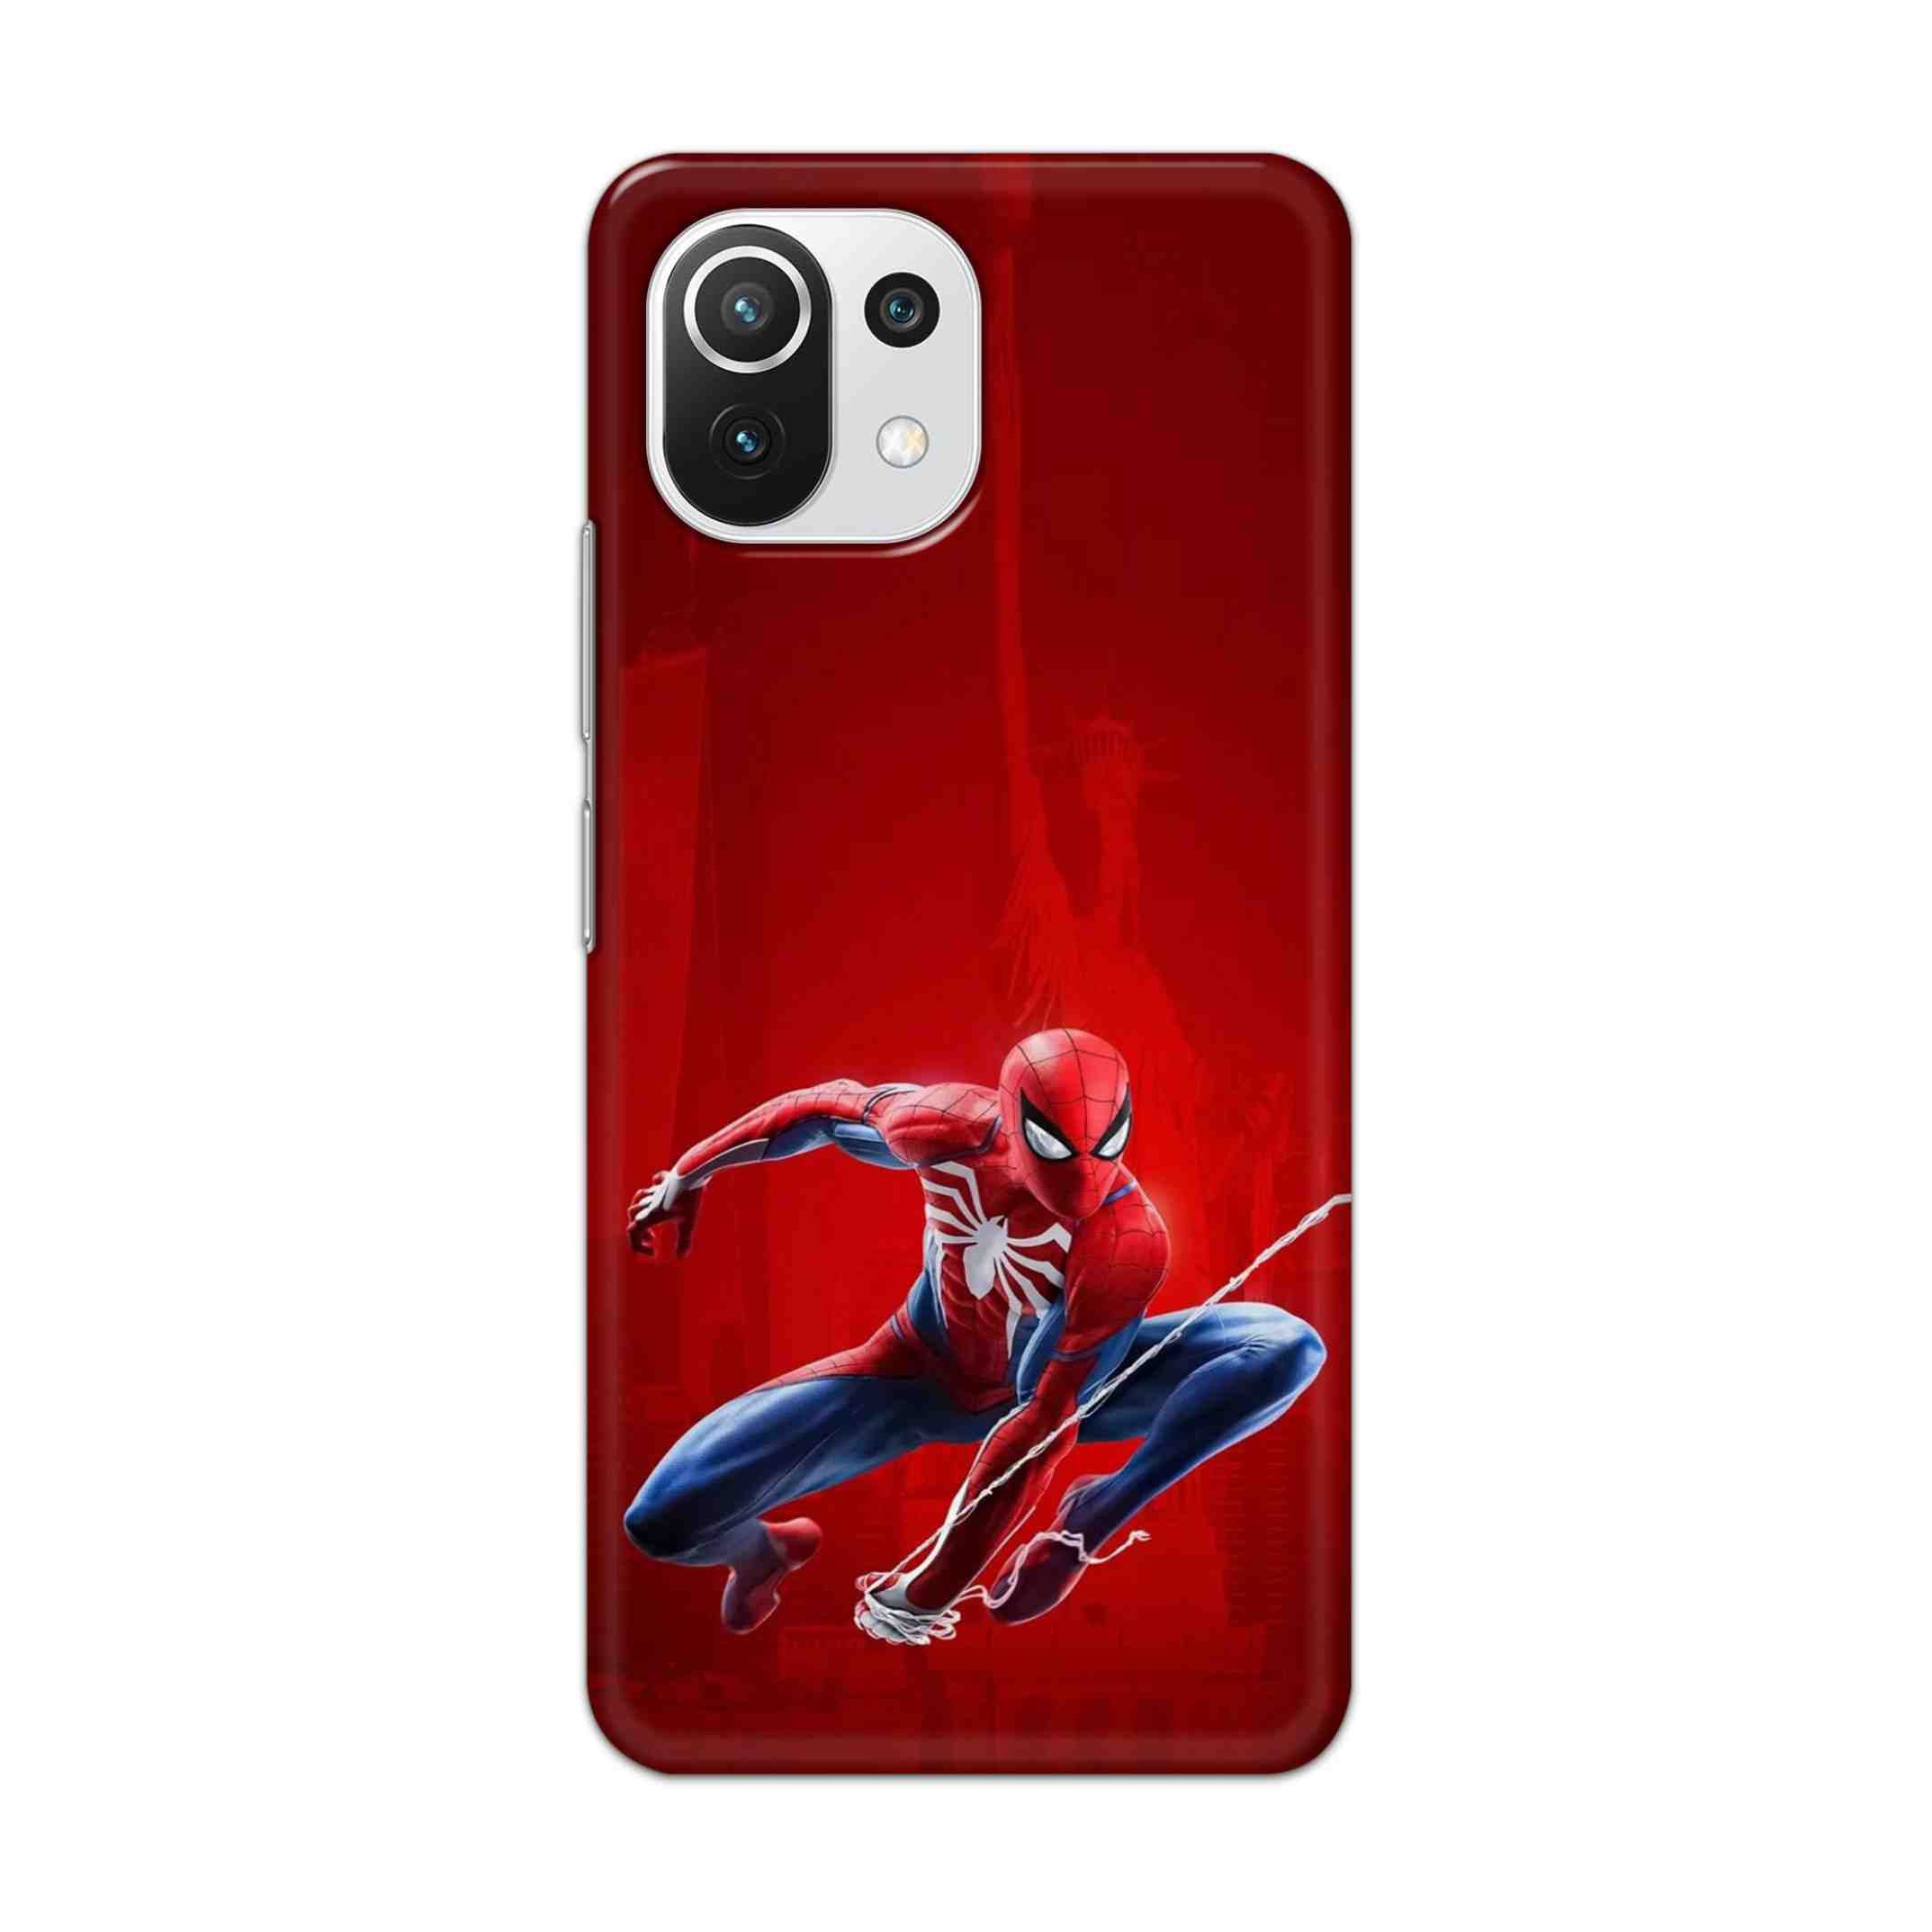 Buy Spiderman Hard Back Mobile Phone Case Cover For Mi 11 Lite NE 5G Online